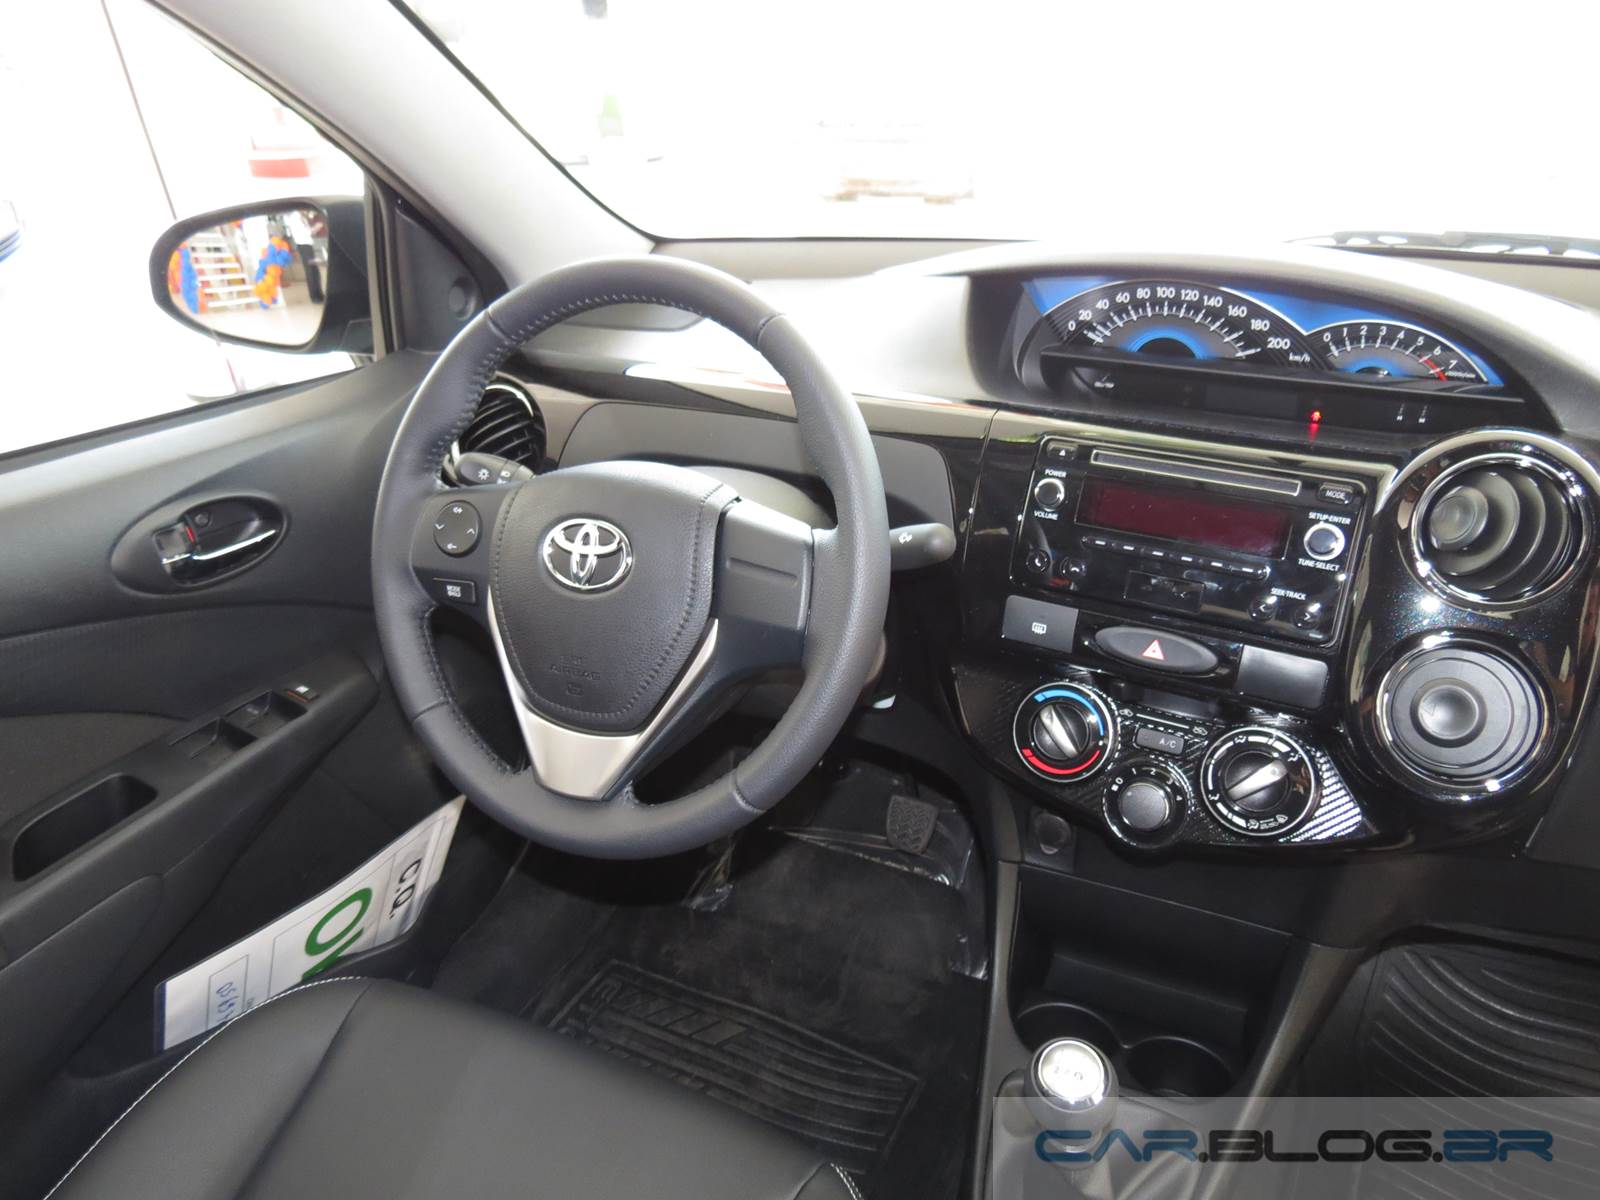 Toyota Etios XLS 2015 - interior - painel